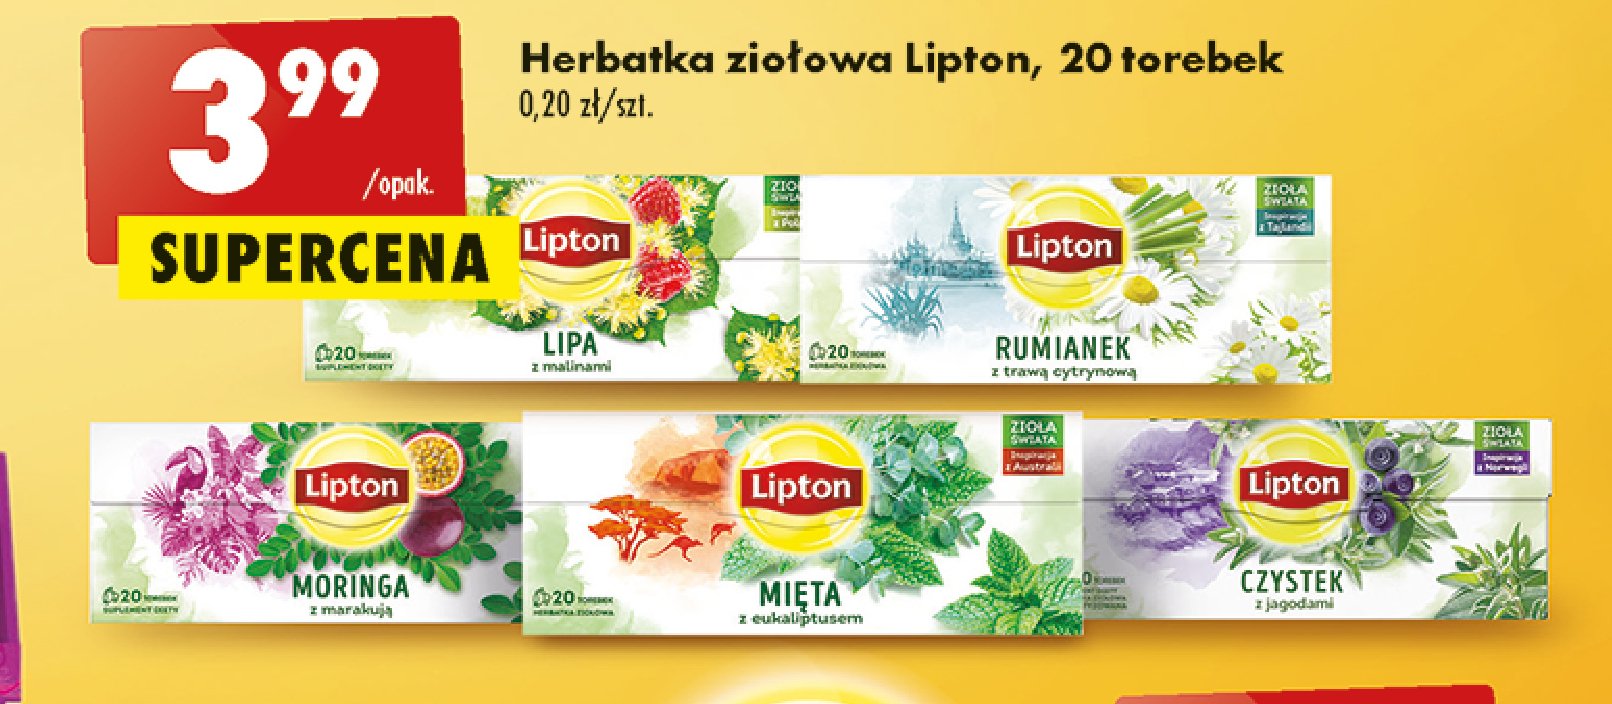 Herbatka czystek z jagodami Lipton zioła świata promocja